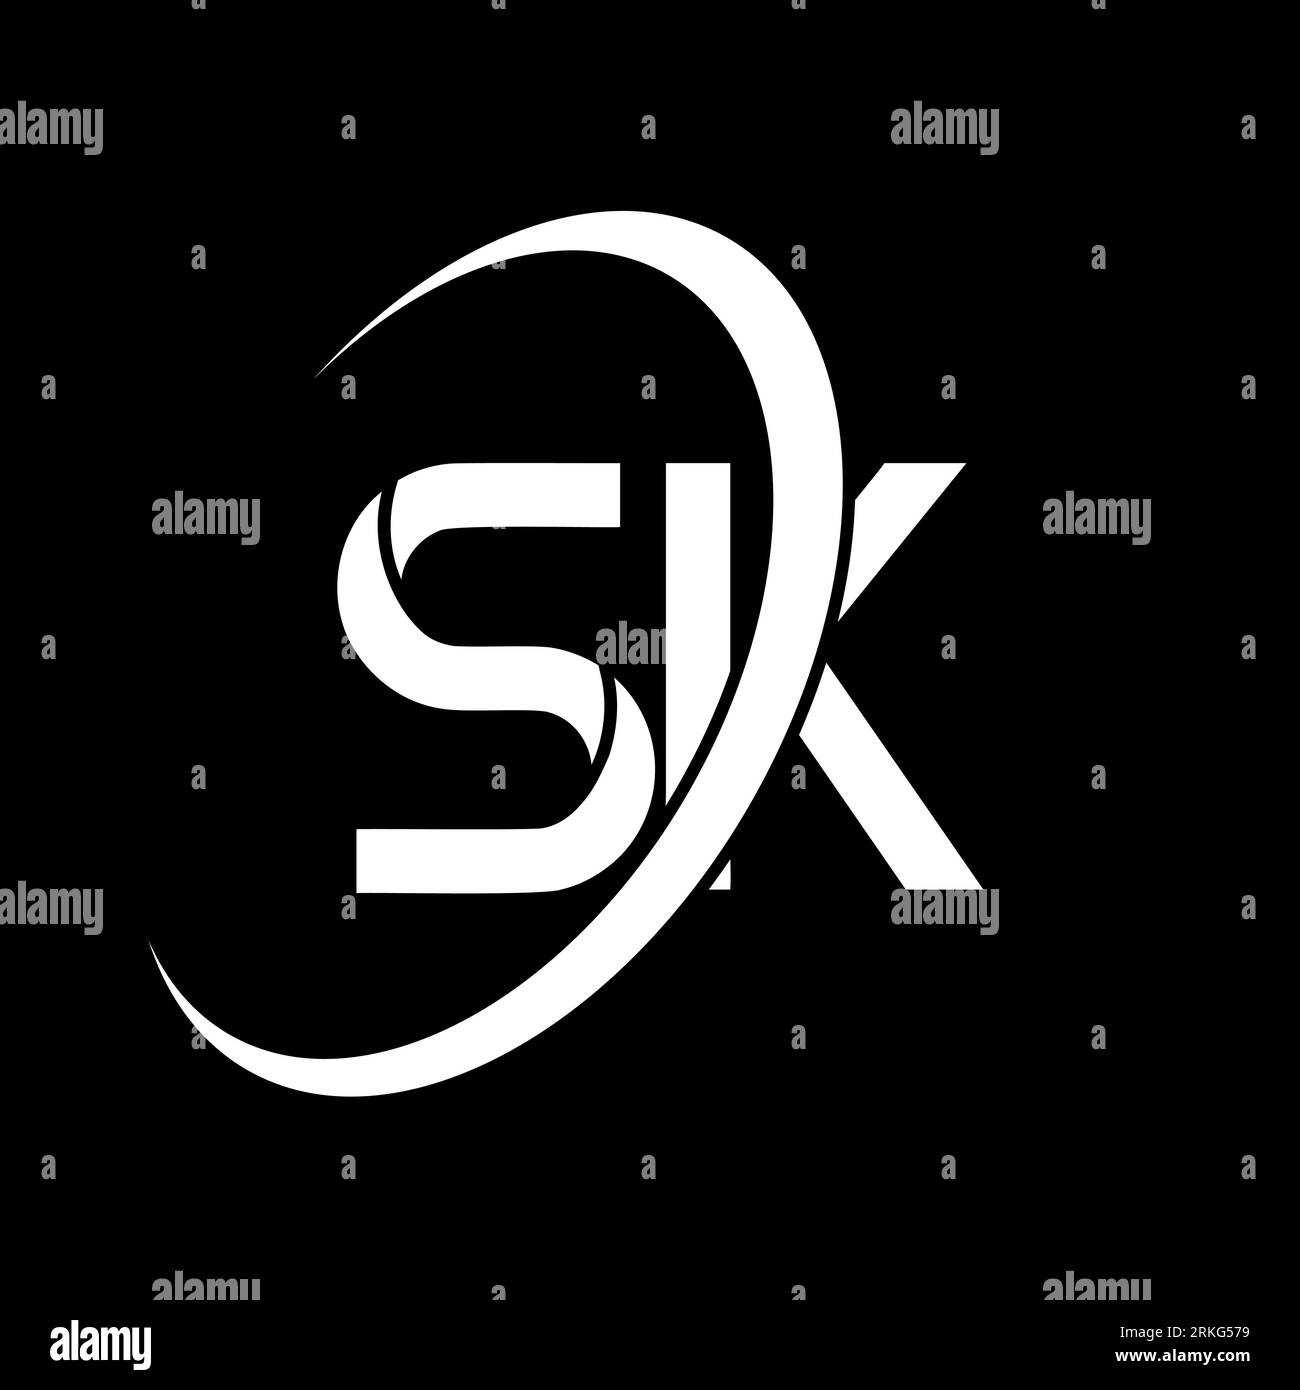 SK-Logo. S K-Ausführung. Weißer Brief von SK. Logo des SK/S K-Buchstabens. Anfangsbuchstabe SK Linked Circle Monogram Logo in Großbuchstaben. Stock Vektor